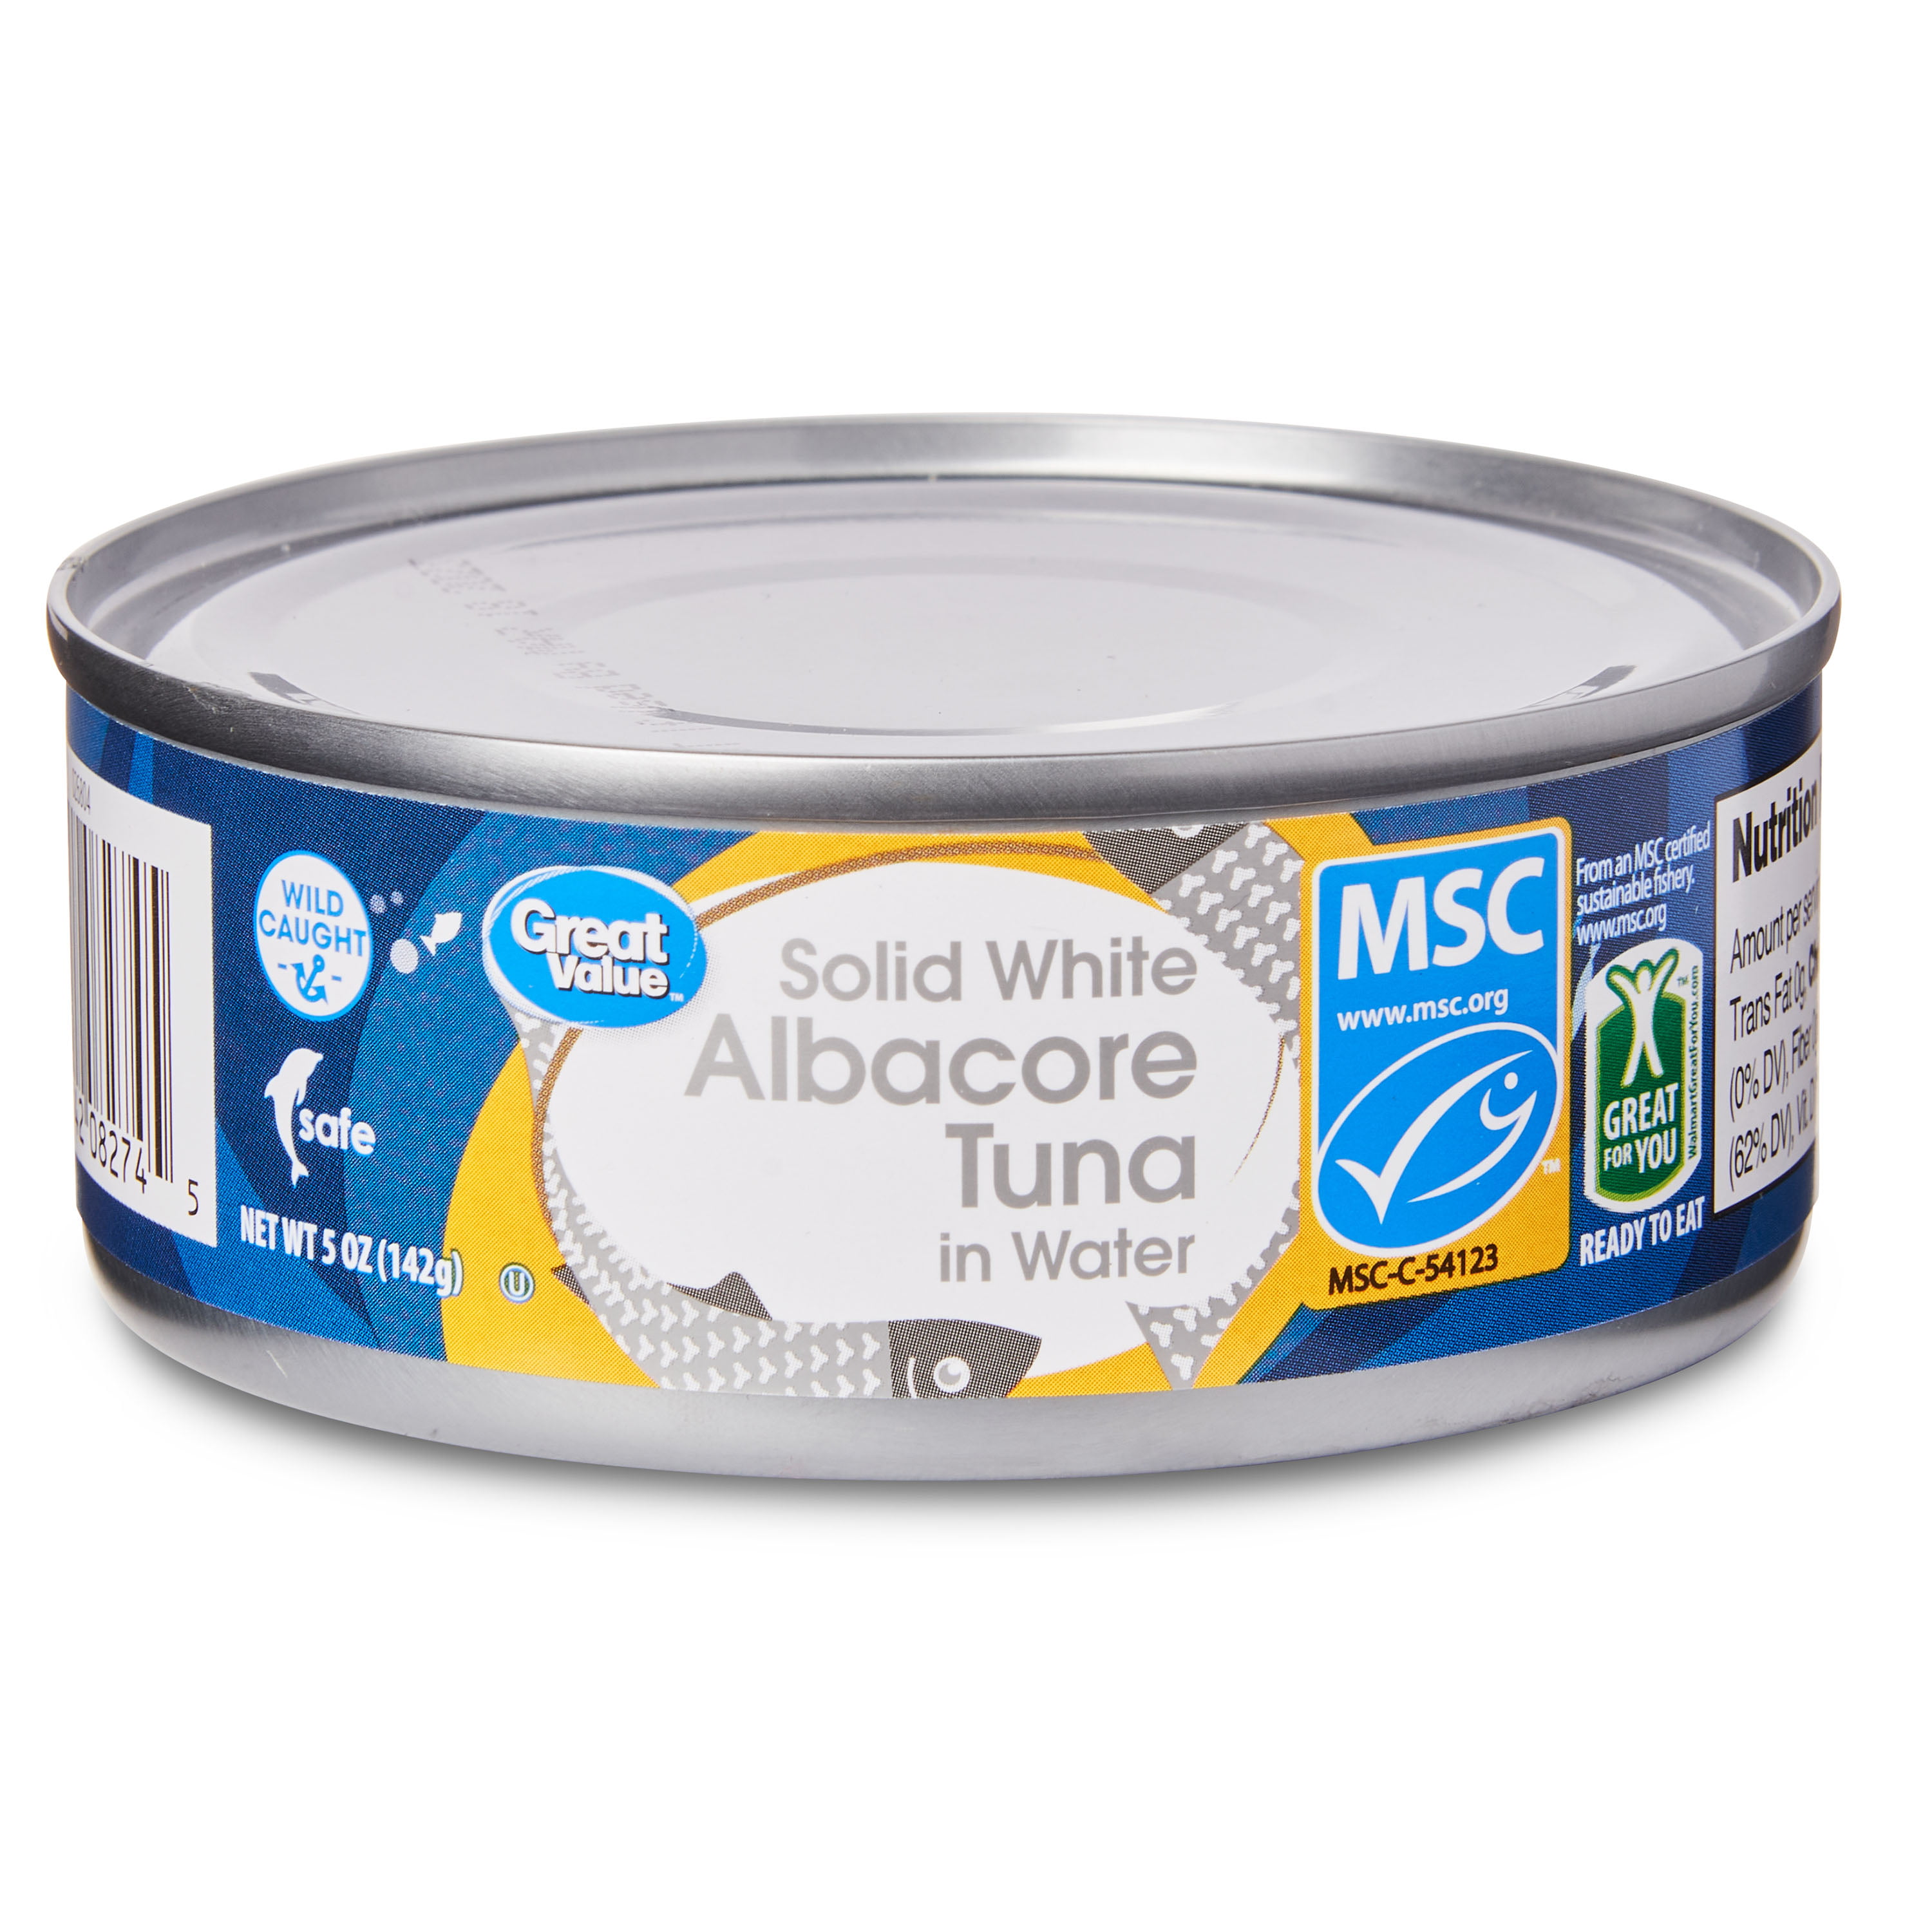 Great Value Premium Wild Caught Solid White Albacore Tuna in Water, 5 oz